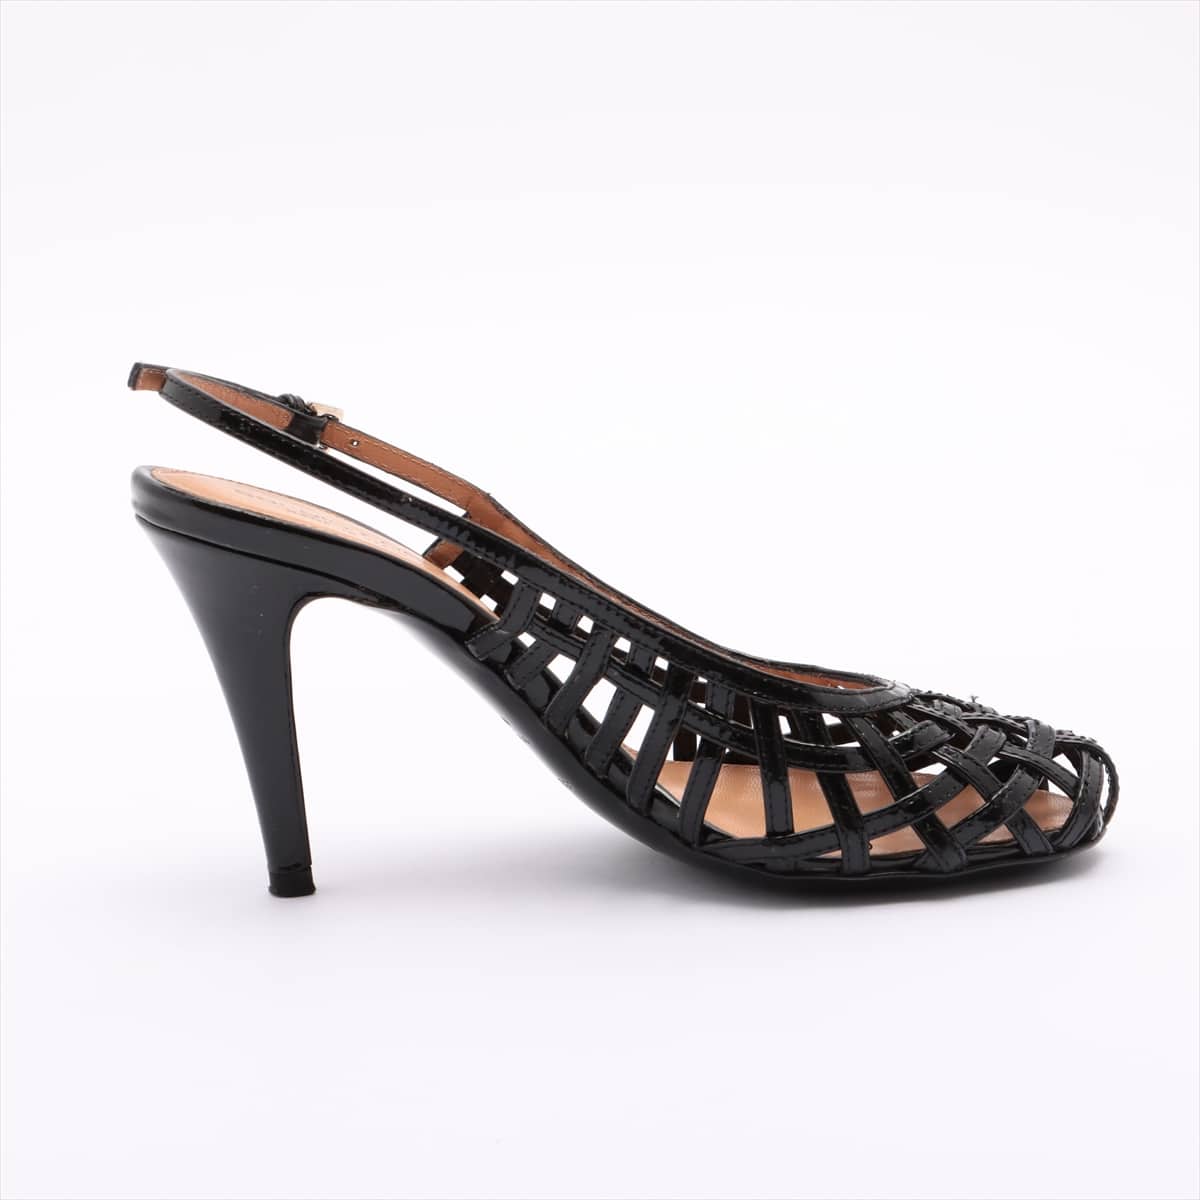 Sergio Rossi Patent leather Sandals 35 Ladies' Black